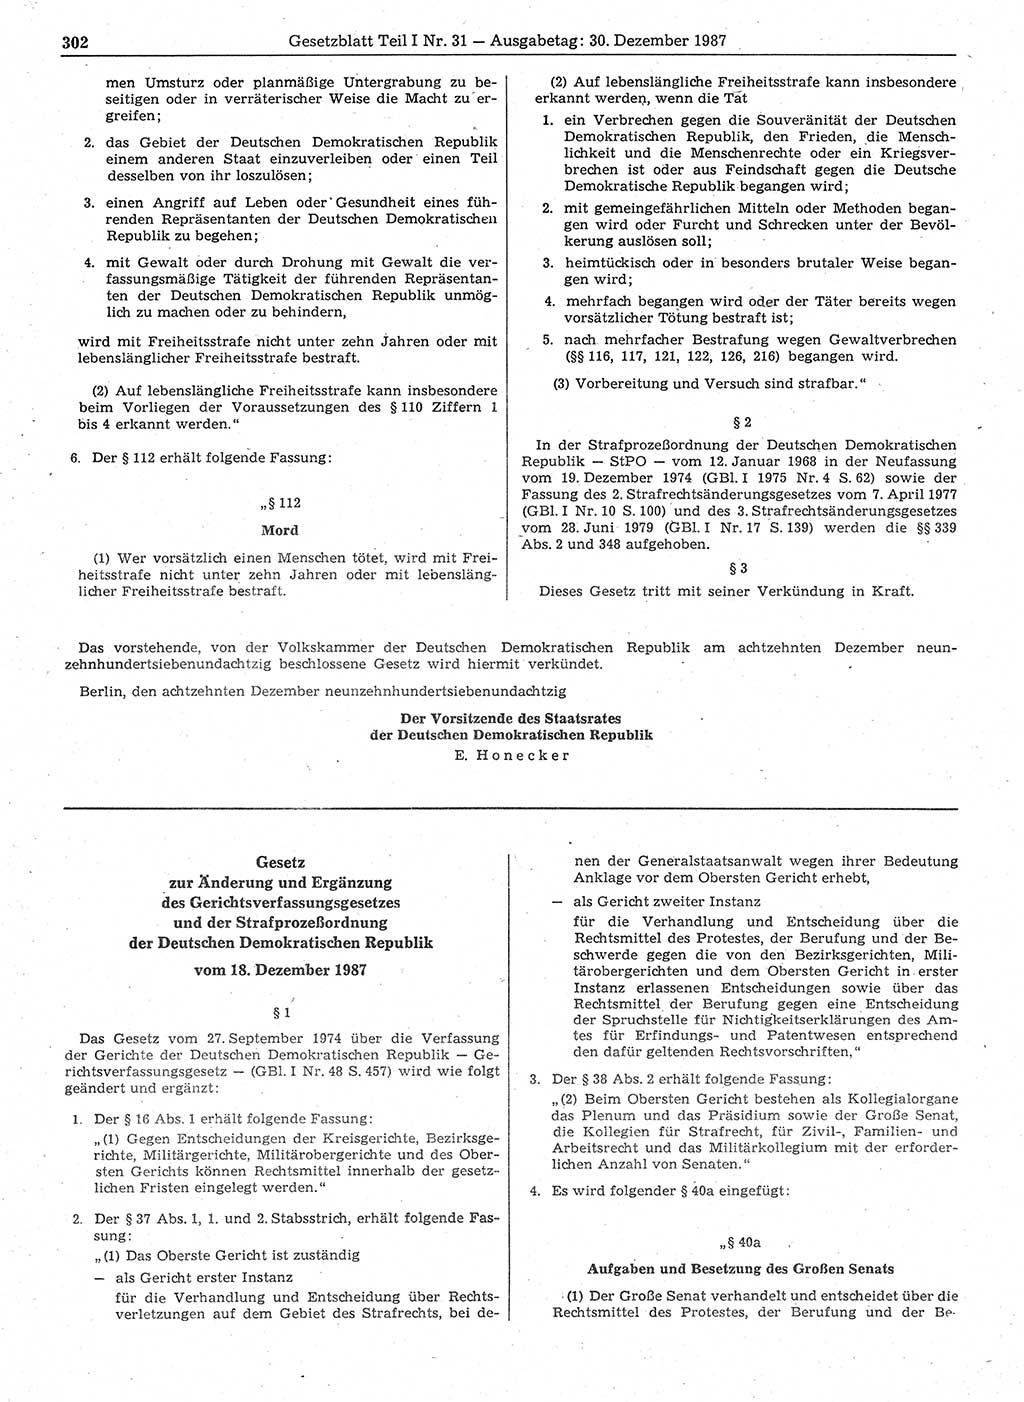 Gesetzblatt (GBl.) der Deutschen Demokratischen Republik (DDR) Teil Ⅰ 1987, Seite 302 (GBl. DDR Ⅰ 1987, S. 302)